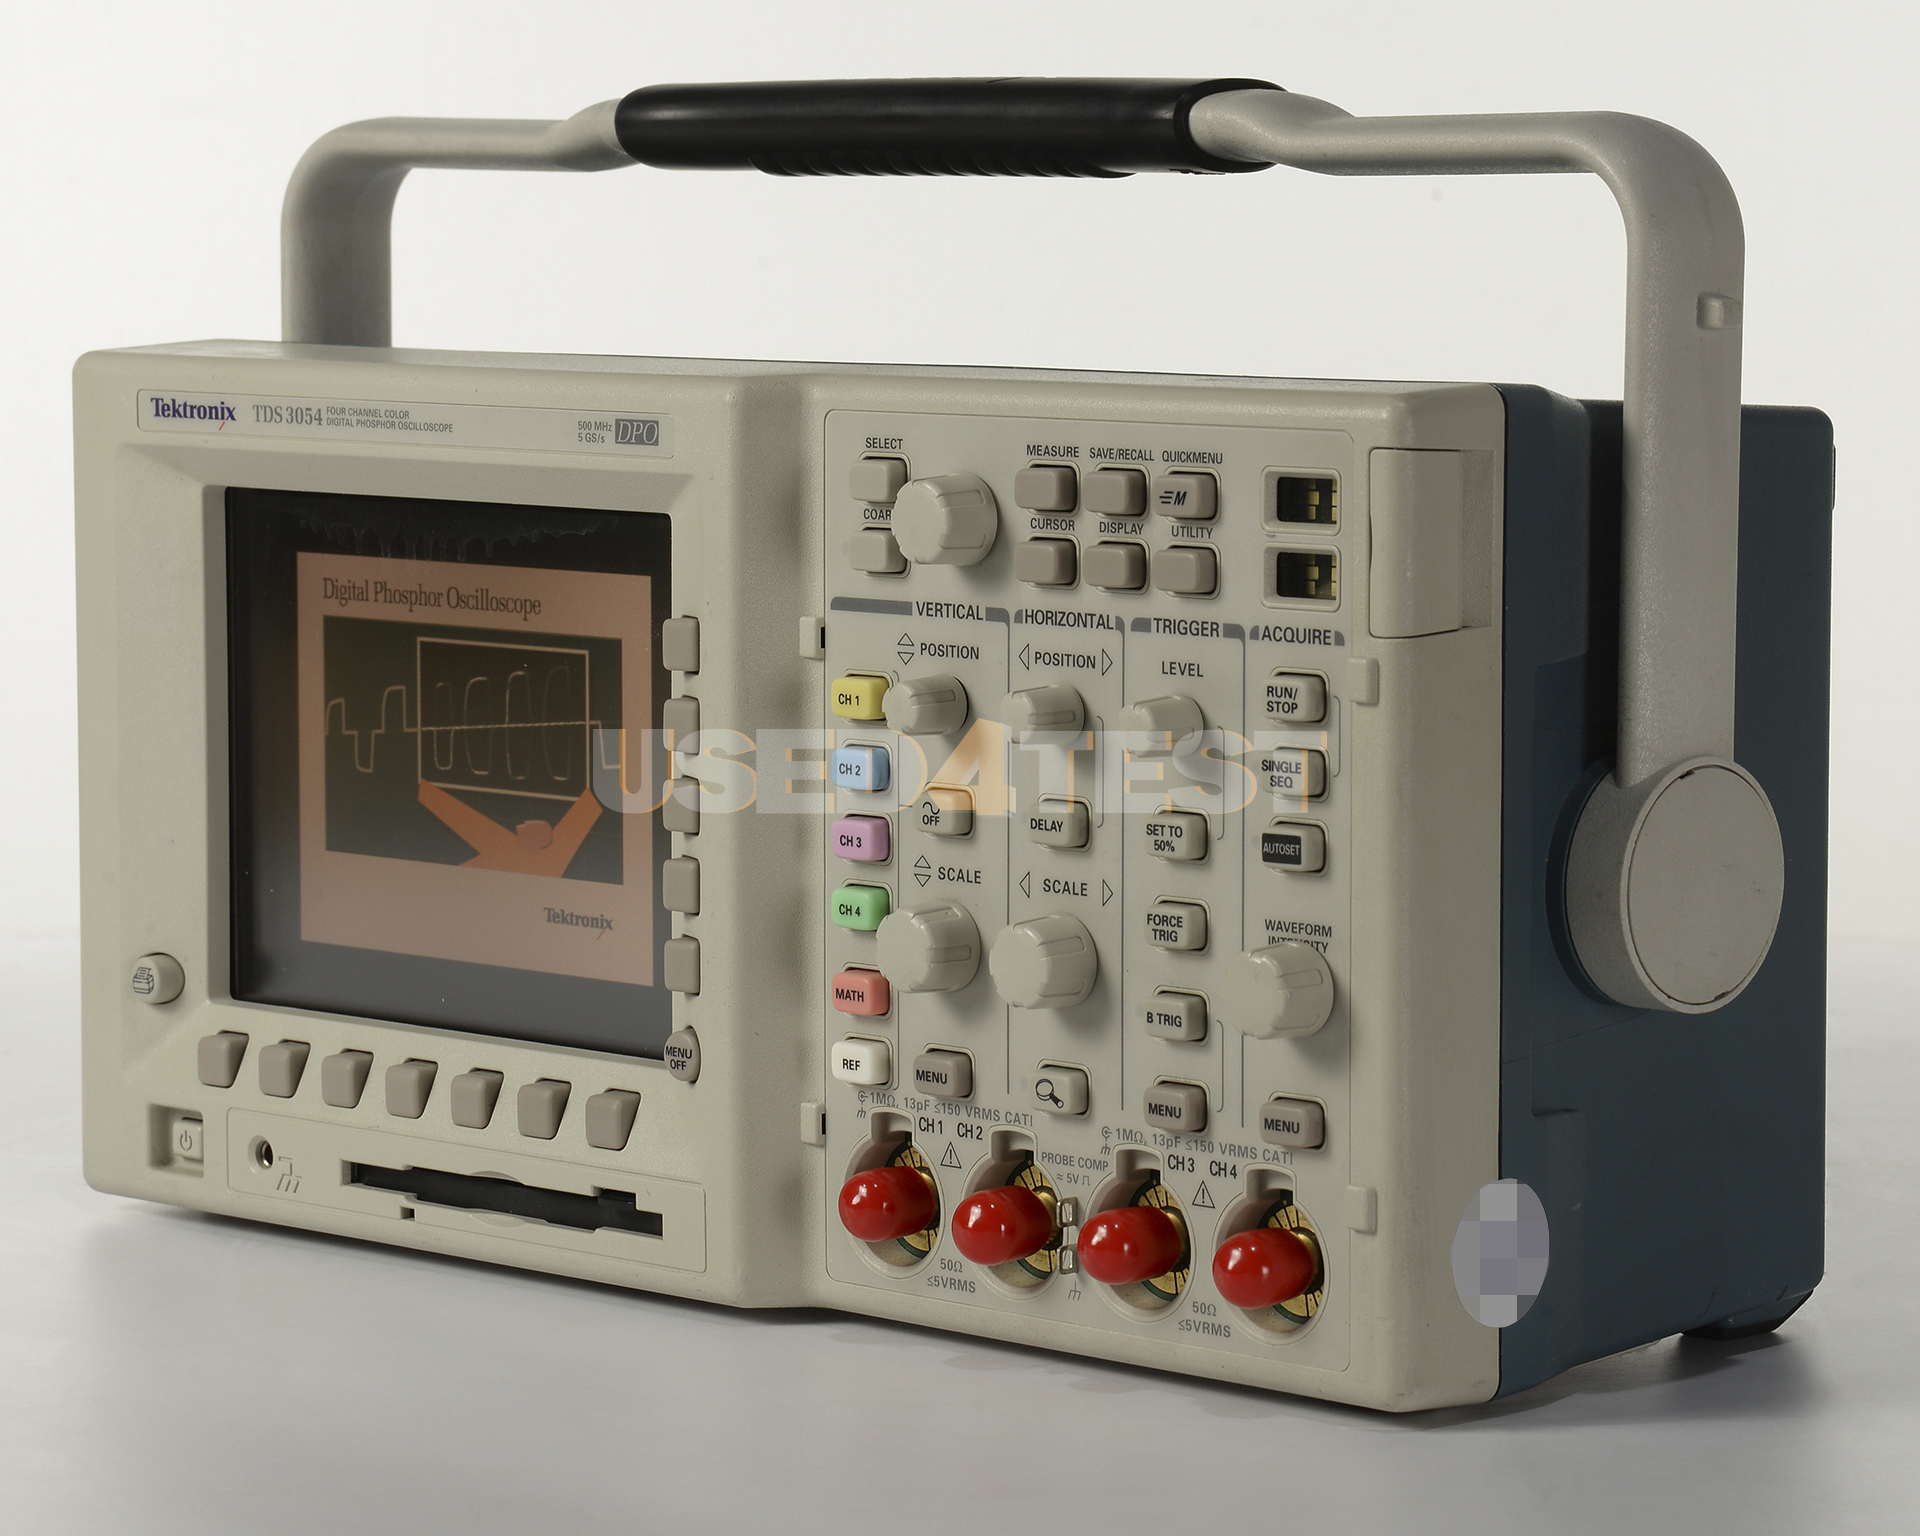 Цифровой осциллограф Tektronix TDS3054
 с полосой пропускания 500 МГц, 4 канала
 
 
 
 

 Стоимость указана в Рублях DDP Москва по безналичному расчету включая НДС 20%
